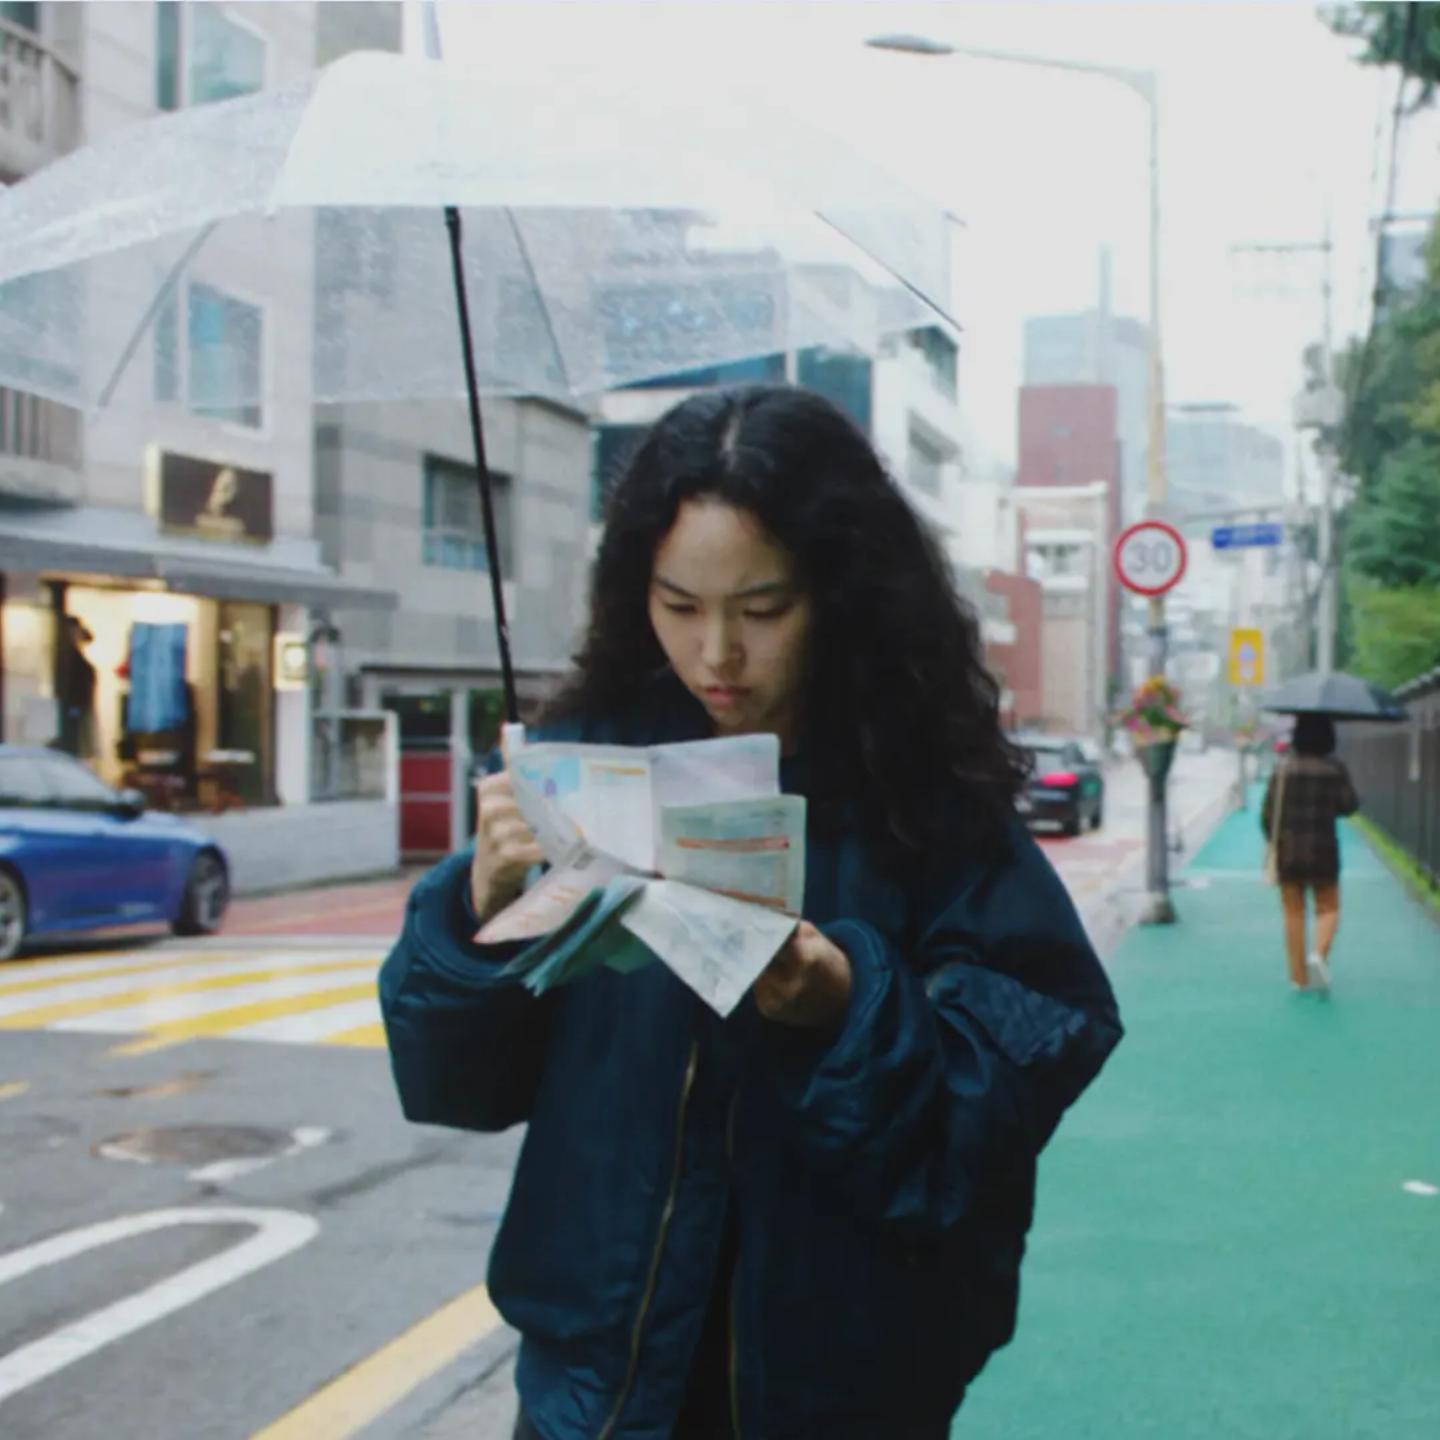 a woman reading a newspaper on a sidewalk